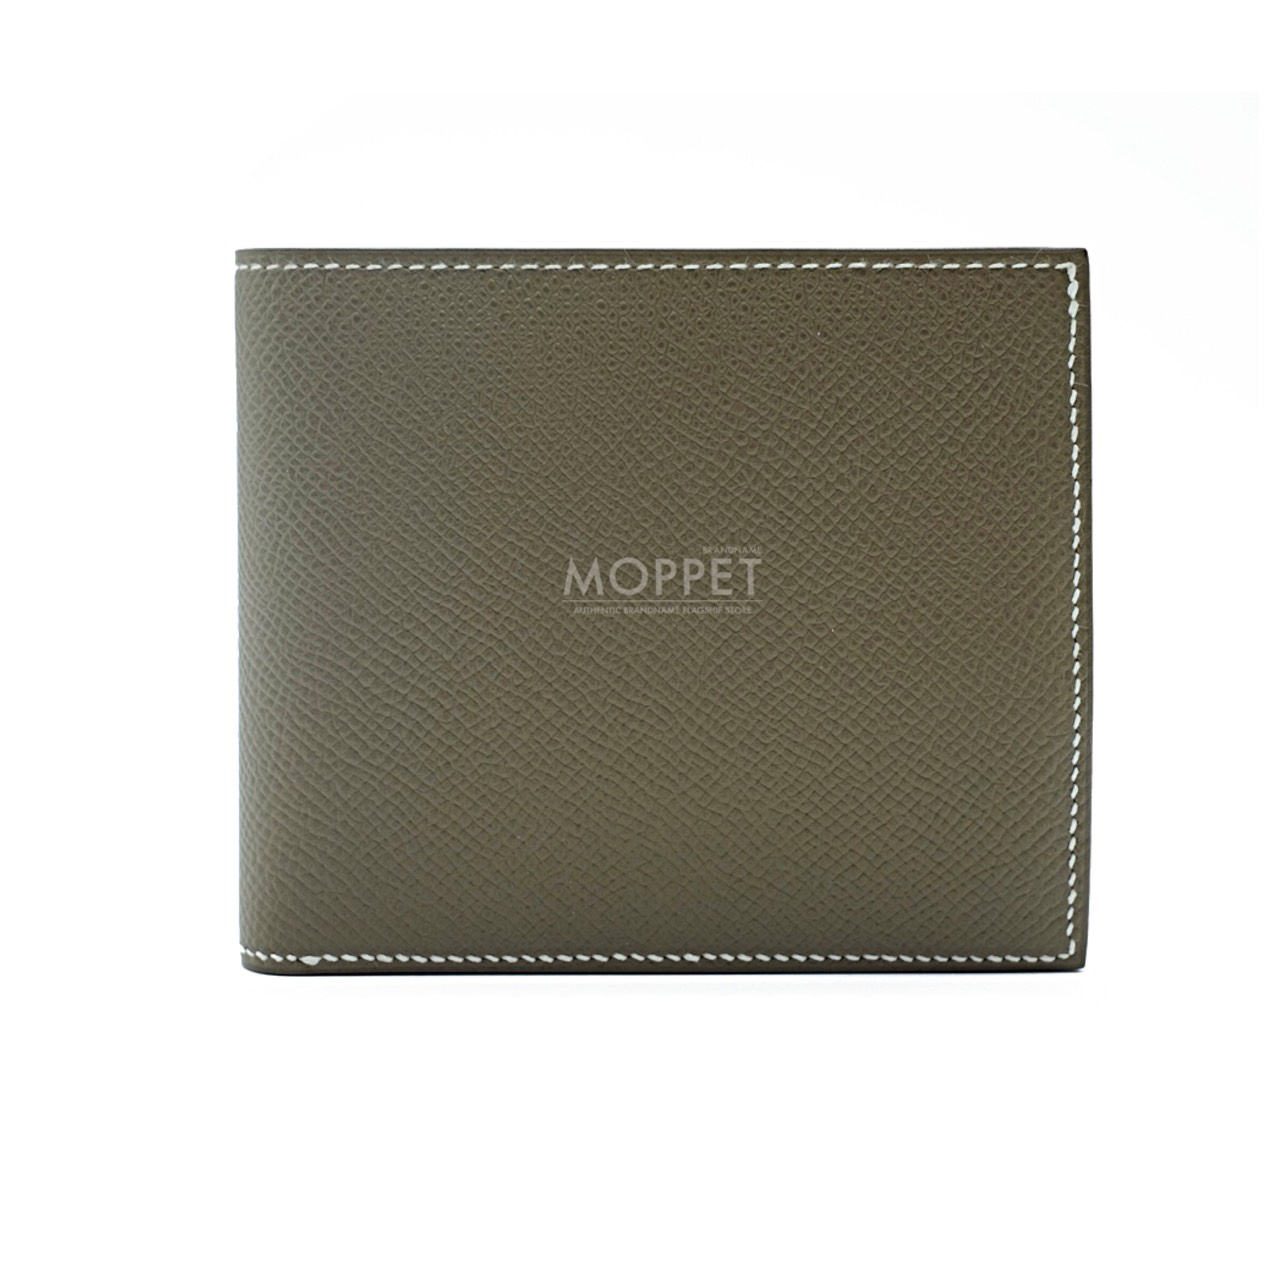 New Hermes MC2 Wallet in Etoupe Epsom